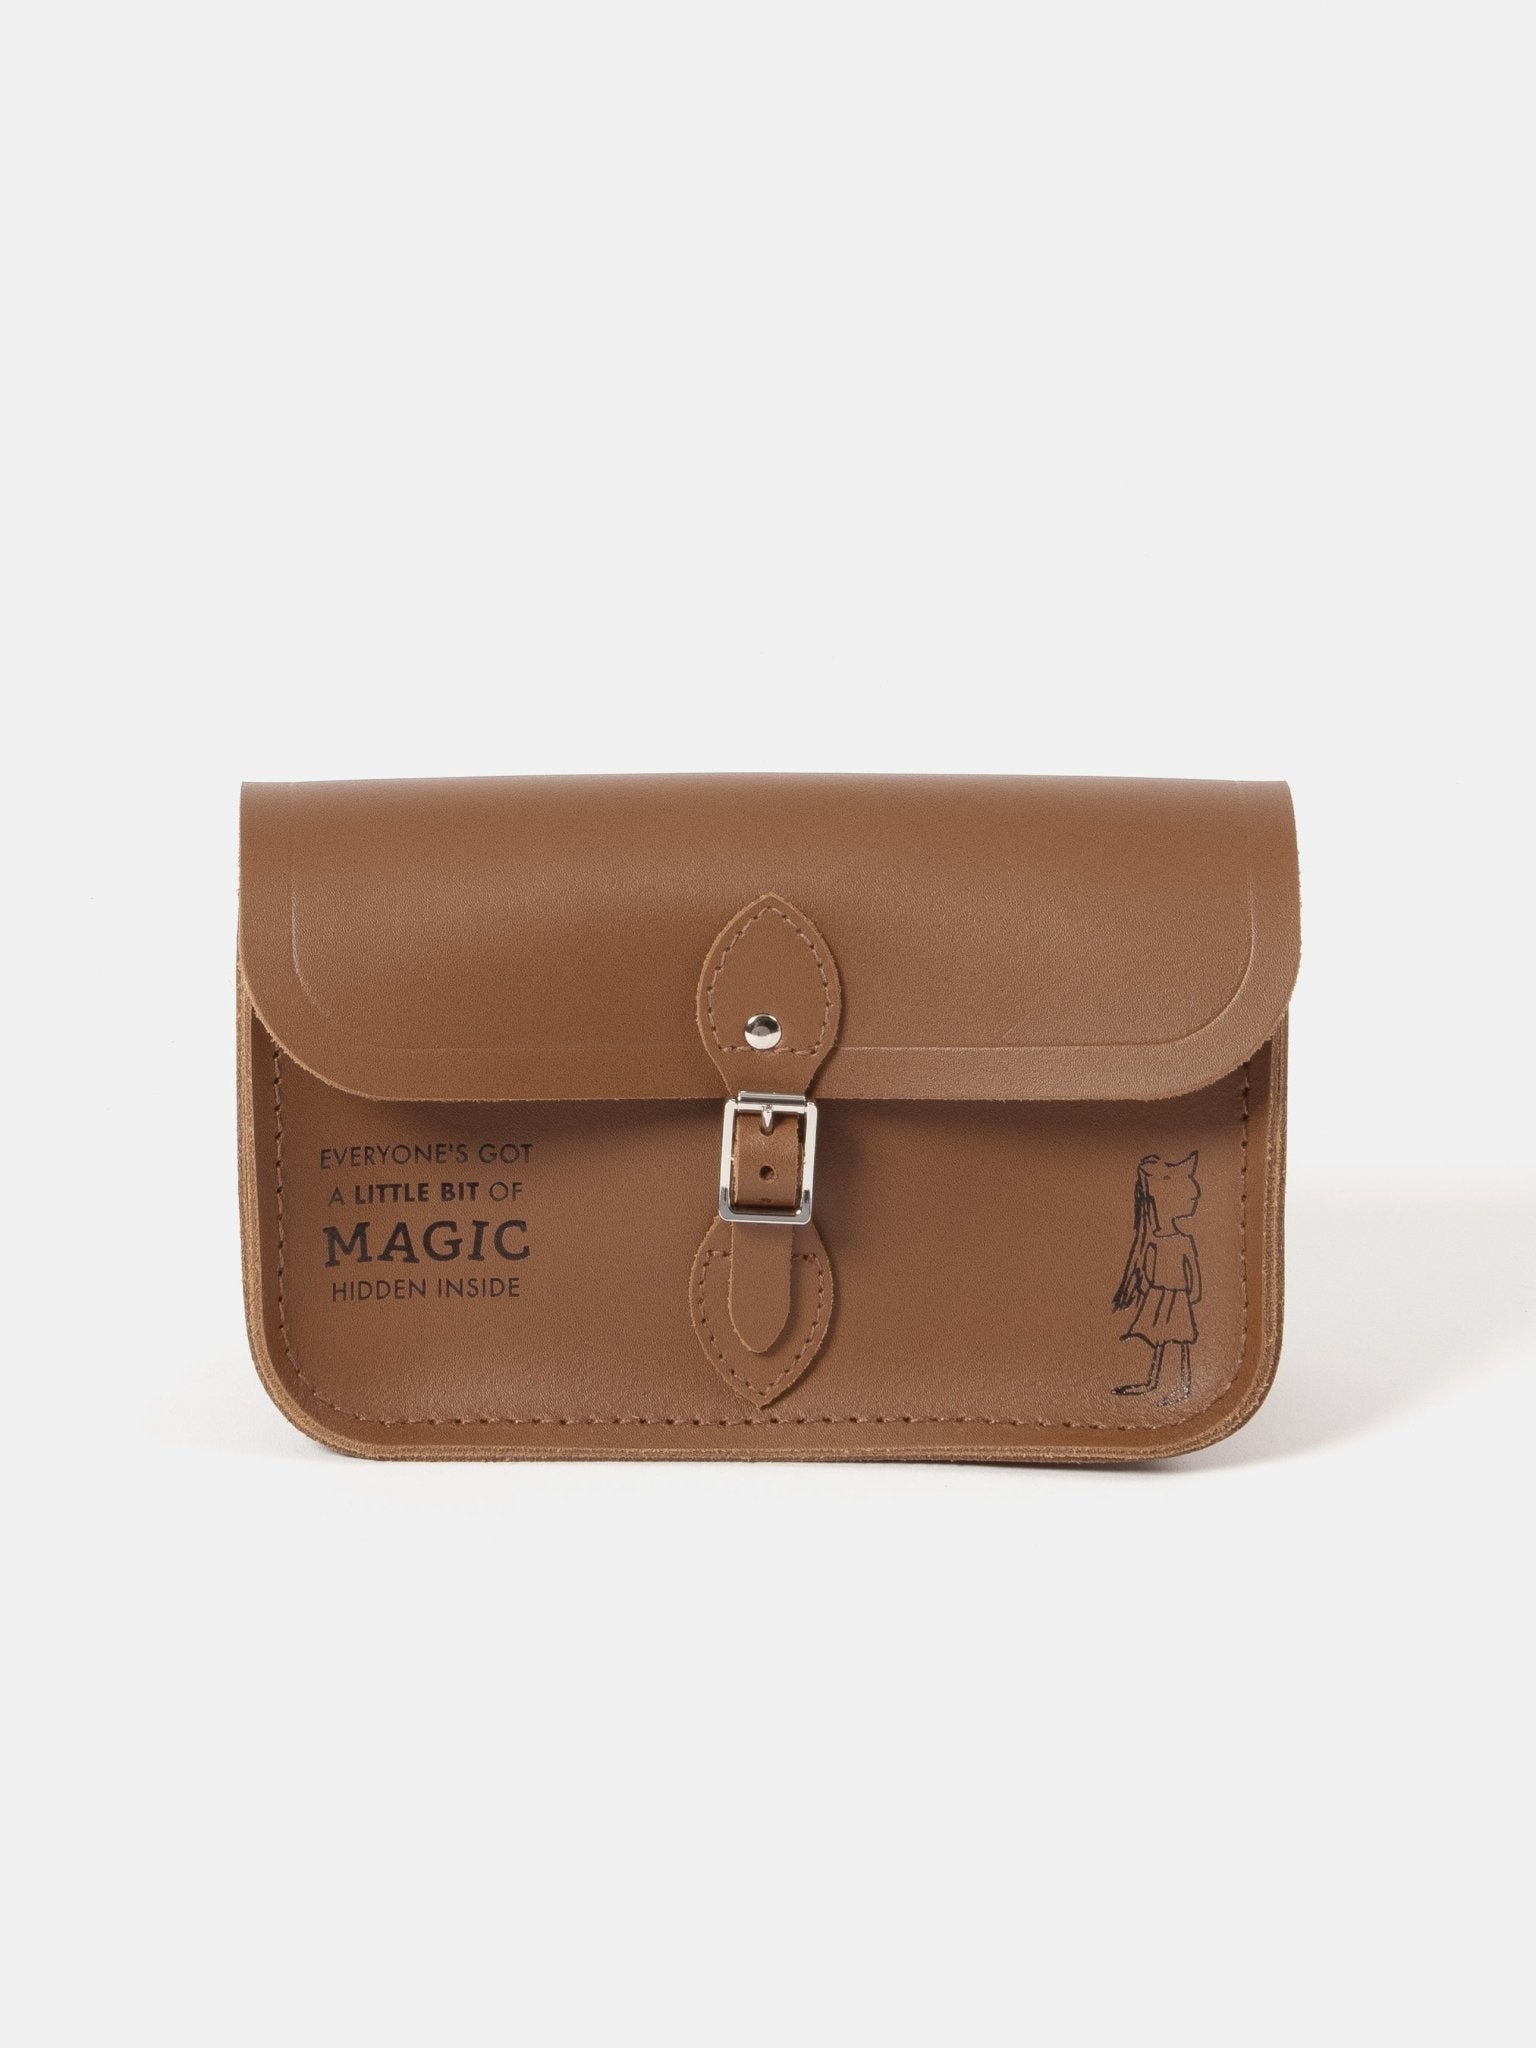 The Cambridge Satchel Co. Women's Brown Handbag product